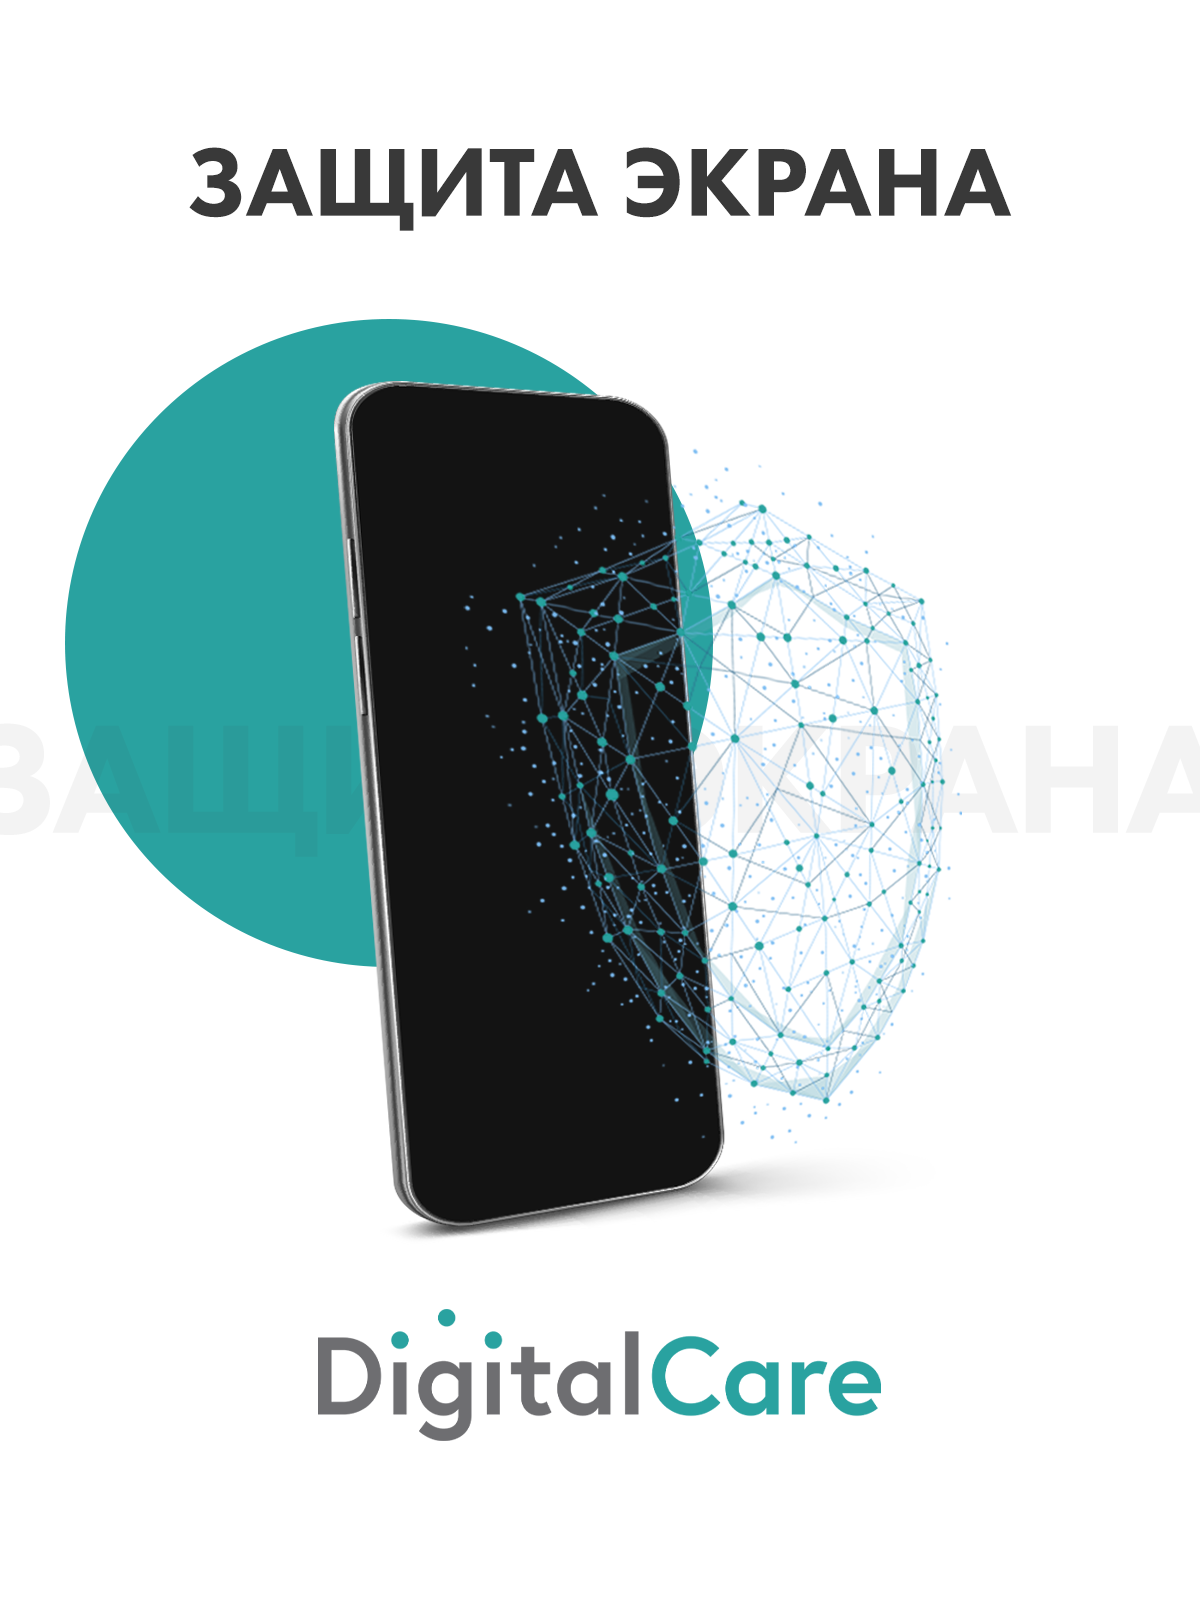 Цифровой продукт Digital Care цифровой продукт защита экрана для android 1 год